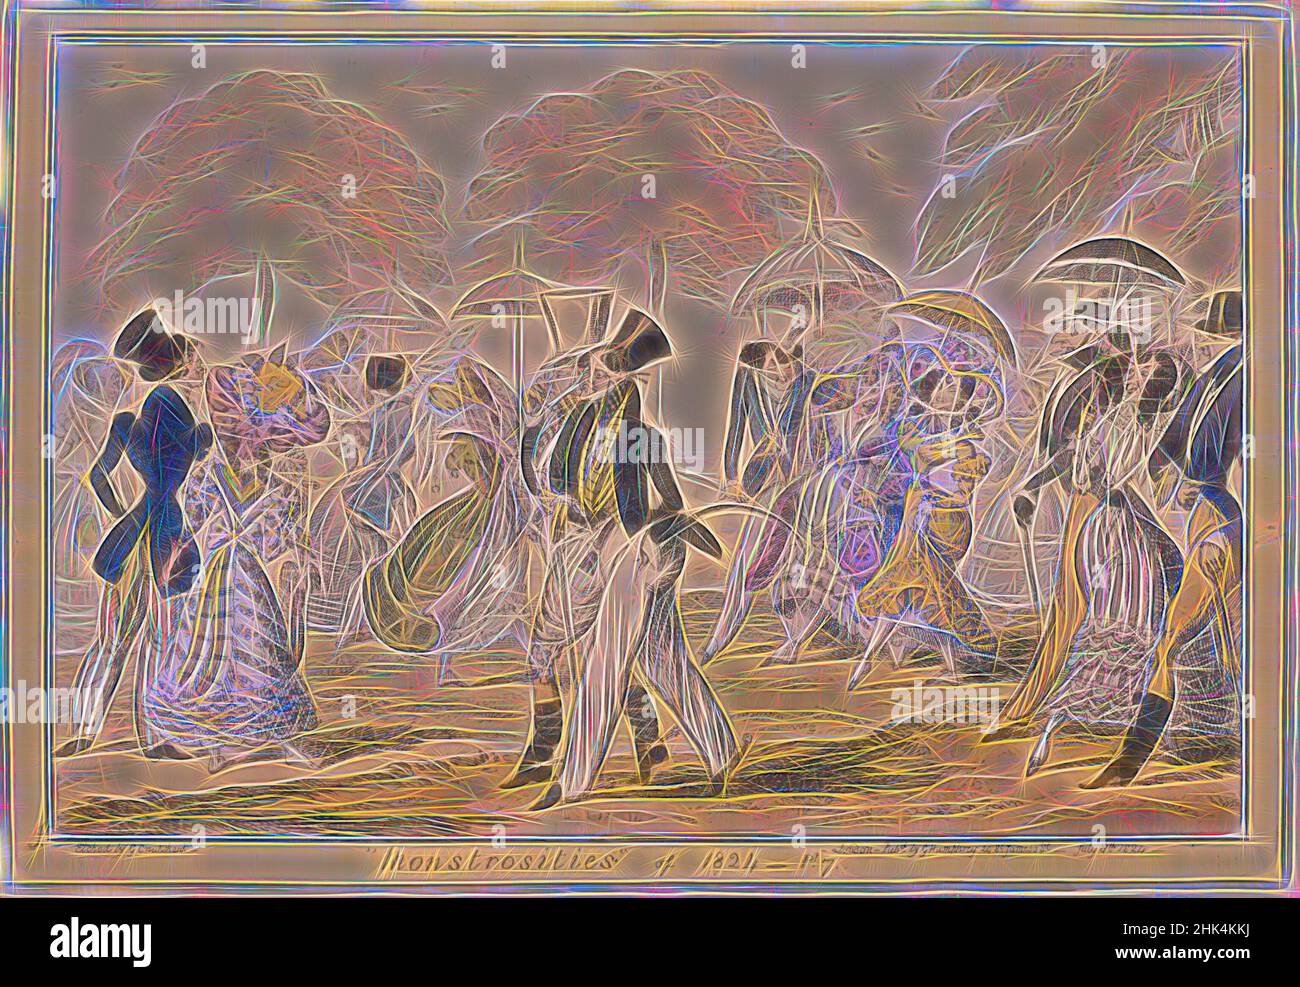 Inspiriert von den Monstrositäten von 1824, George Cruikshank, British, 1792-1878, Etching, Handfarbig auf Webe-Papier, 1824, 10 5/16 x 14 7/8 Zoll, 26,2 x 37,8 cm, neu erfunden von Artotop. Klassische Kunst neu erfunden mit einem modernen Twist. Design von warmen fröhlichen Leuchten der Helligkeit und Lichtstrahl Strahlkraft. Fotografie inspiriert von Surrealismus und Futurismus, umarmt dynamische Energie der modernen Technologie, Bewegung, Geschwindigkeit und Kultur zu revolutionieren Stockfoto